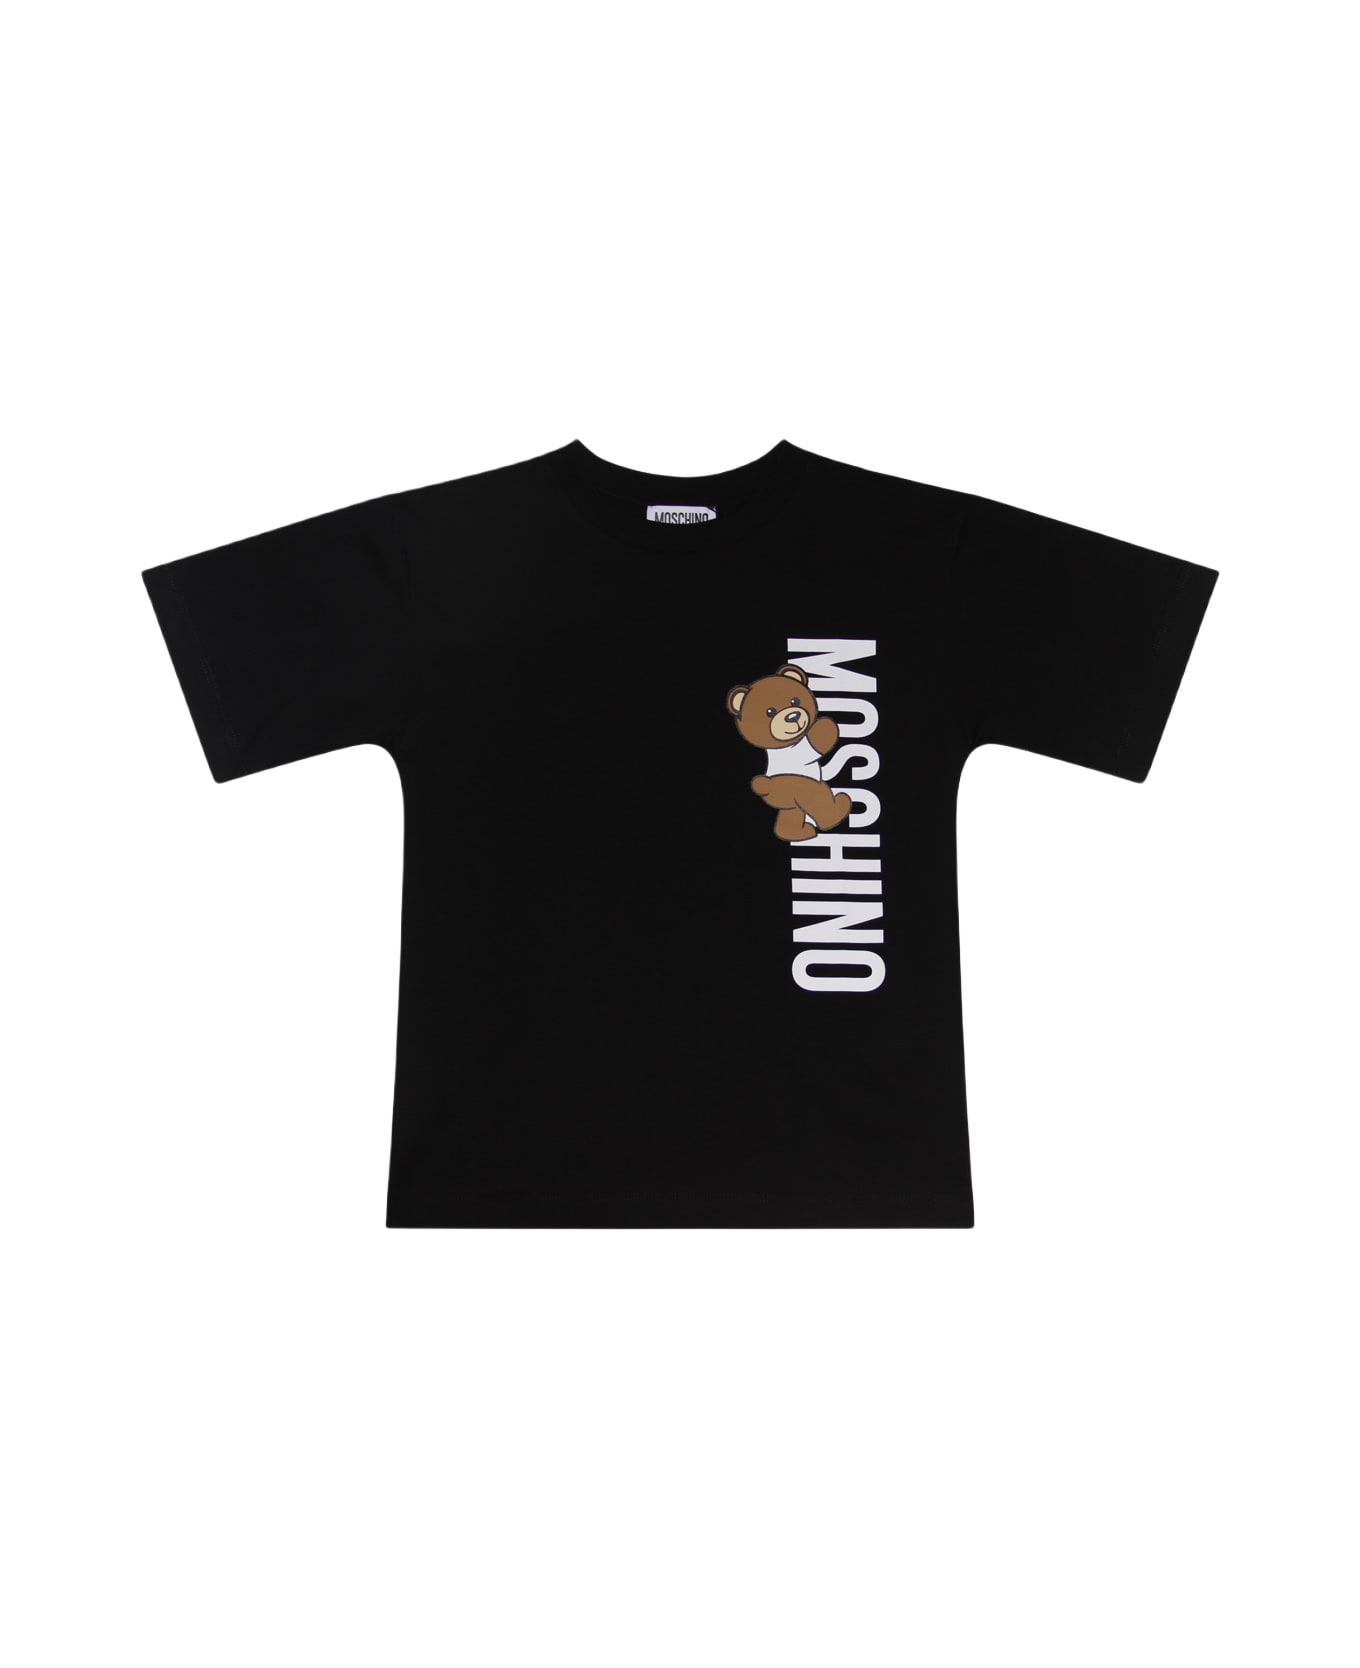 Moschino Black Cotton T-shirt - Black